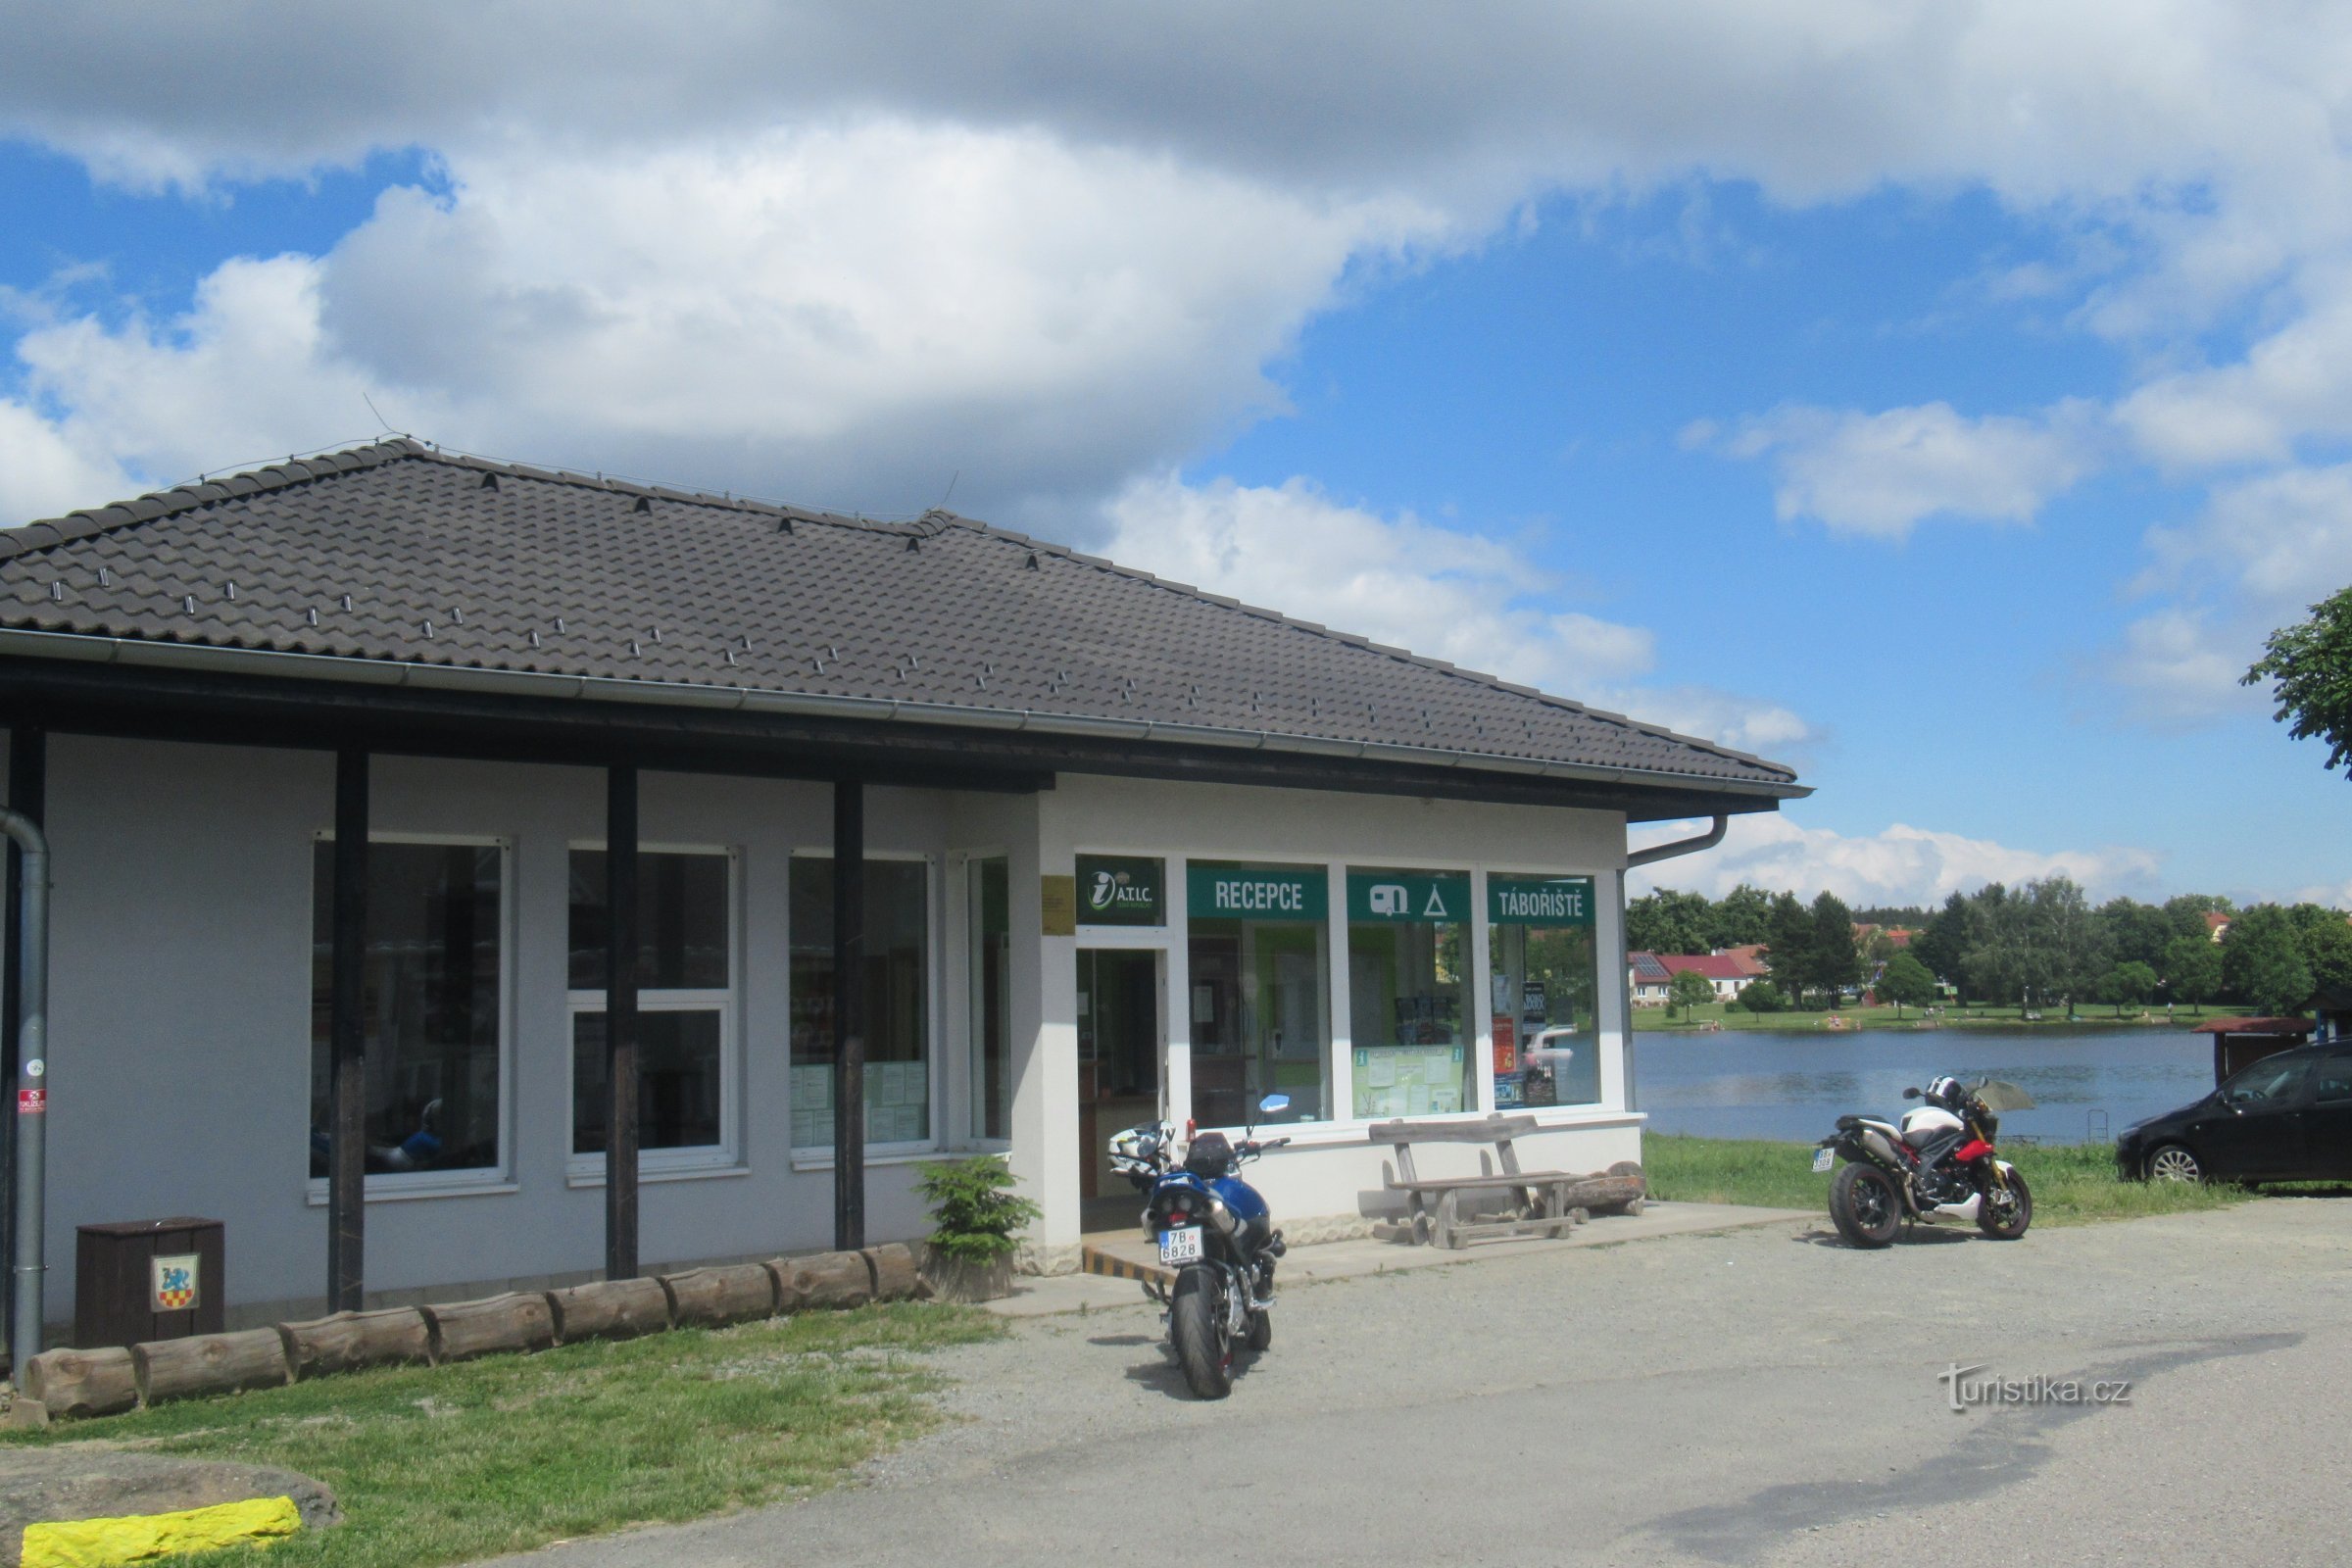 Suchý - Turisztikai Információs Központ